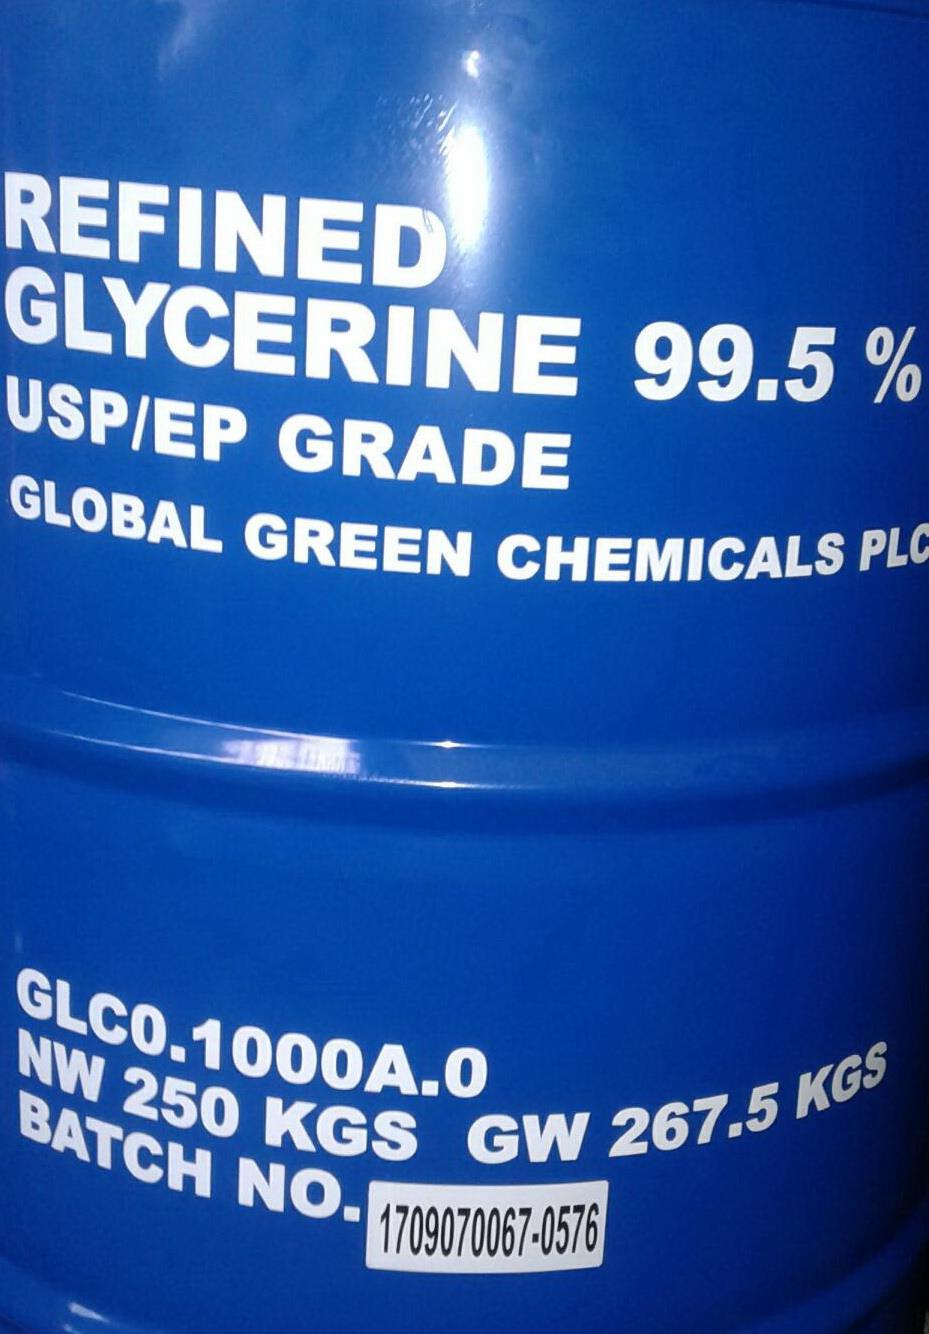 กรีเซอรีน,Glycerine 99.5%, กรีเซอรีน,Glycerine 99.5%,จำหน่ายเคมีอาหาร,เคมีอุตสาหกรรม,เคมีฟาร์ม,เคมีเกษตร,เคมีระบบน้ำ,เคมีทั่วไป,เคมี,ขายเคมี,จำหน่ายเคมีภัณฑ์,,Chemicals/General Chemicals